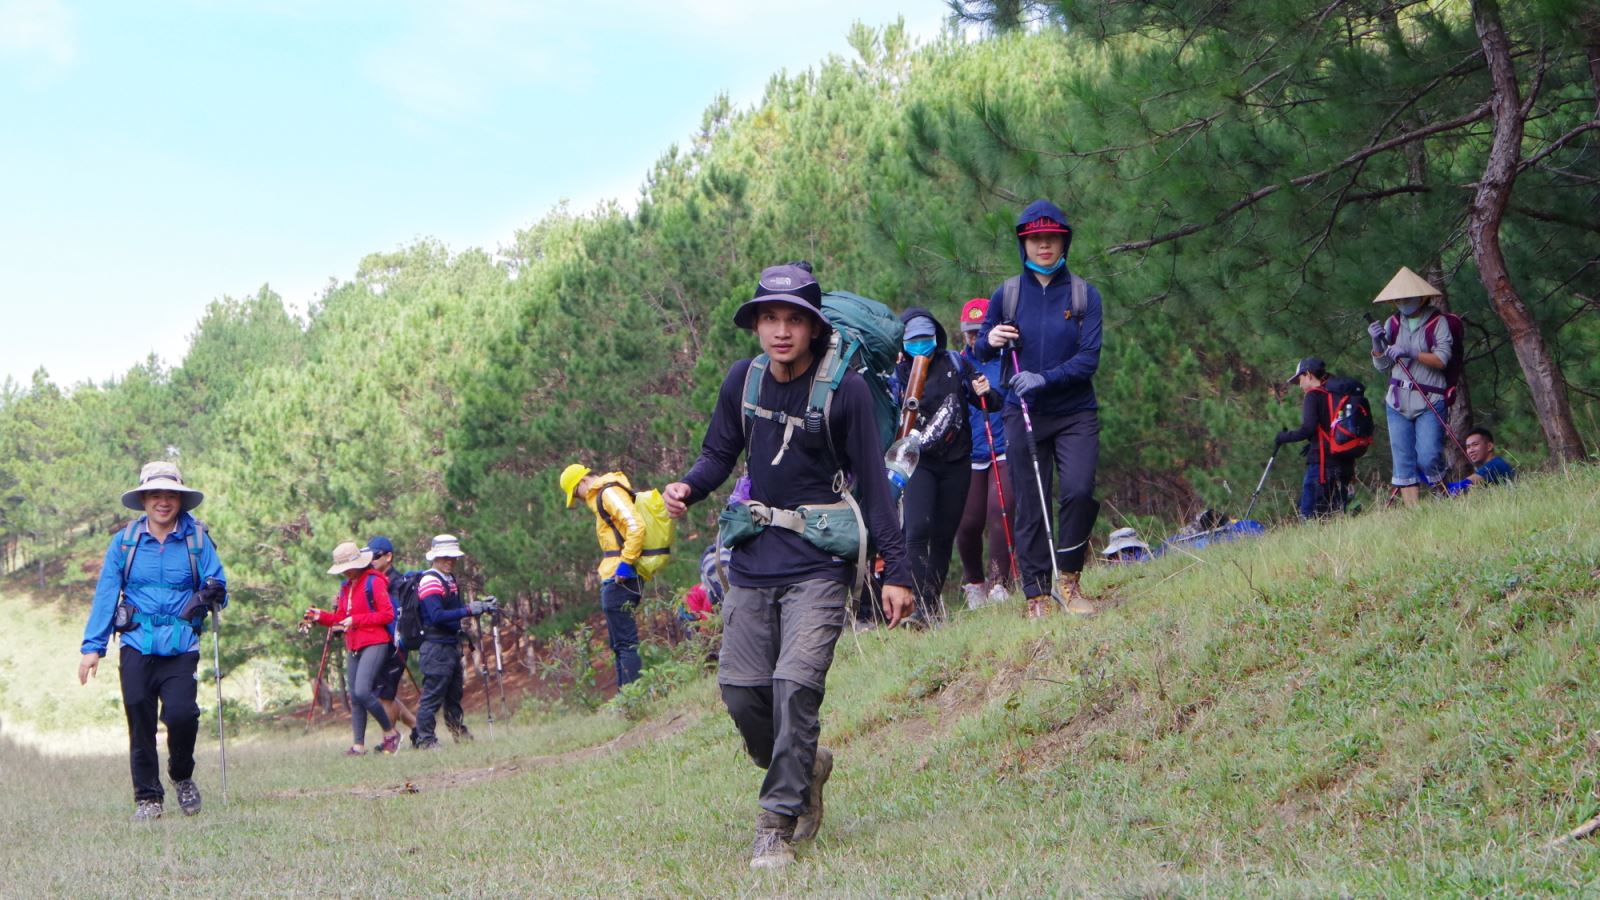 Các tour guide trekking giúp người tham gia cán đích qua những chuyến đi bộ đường dài, leo núi nhiều ngày.